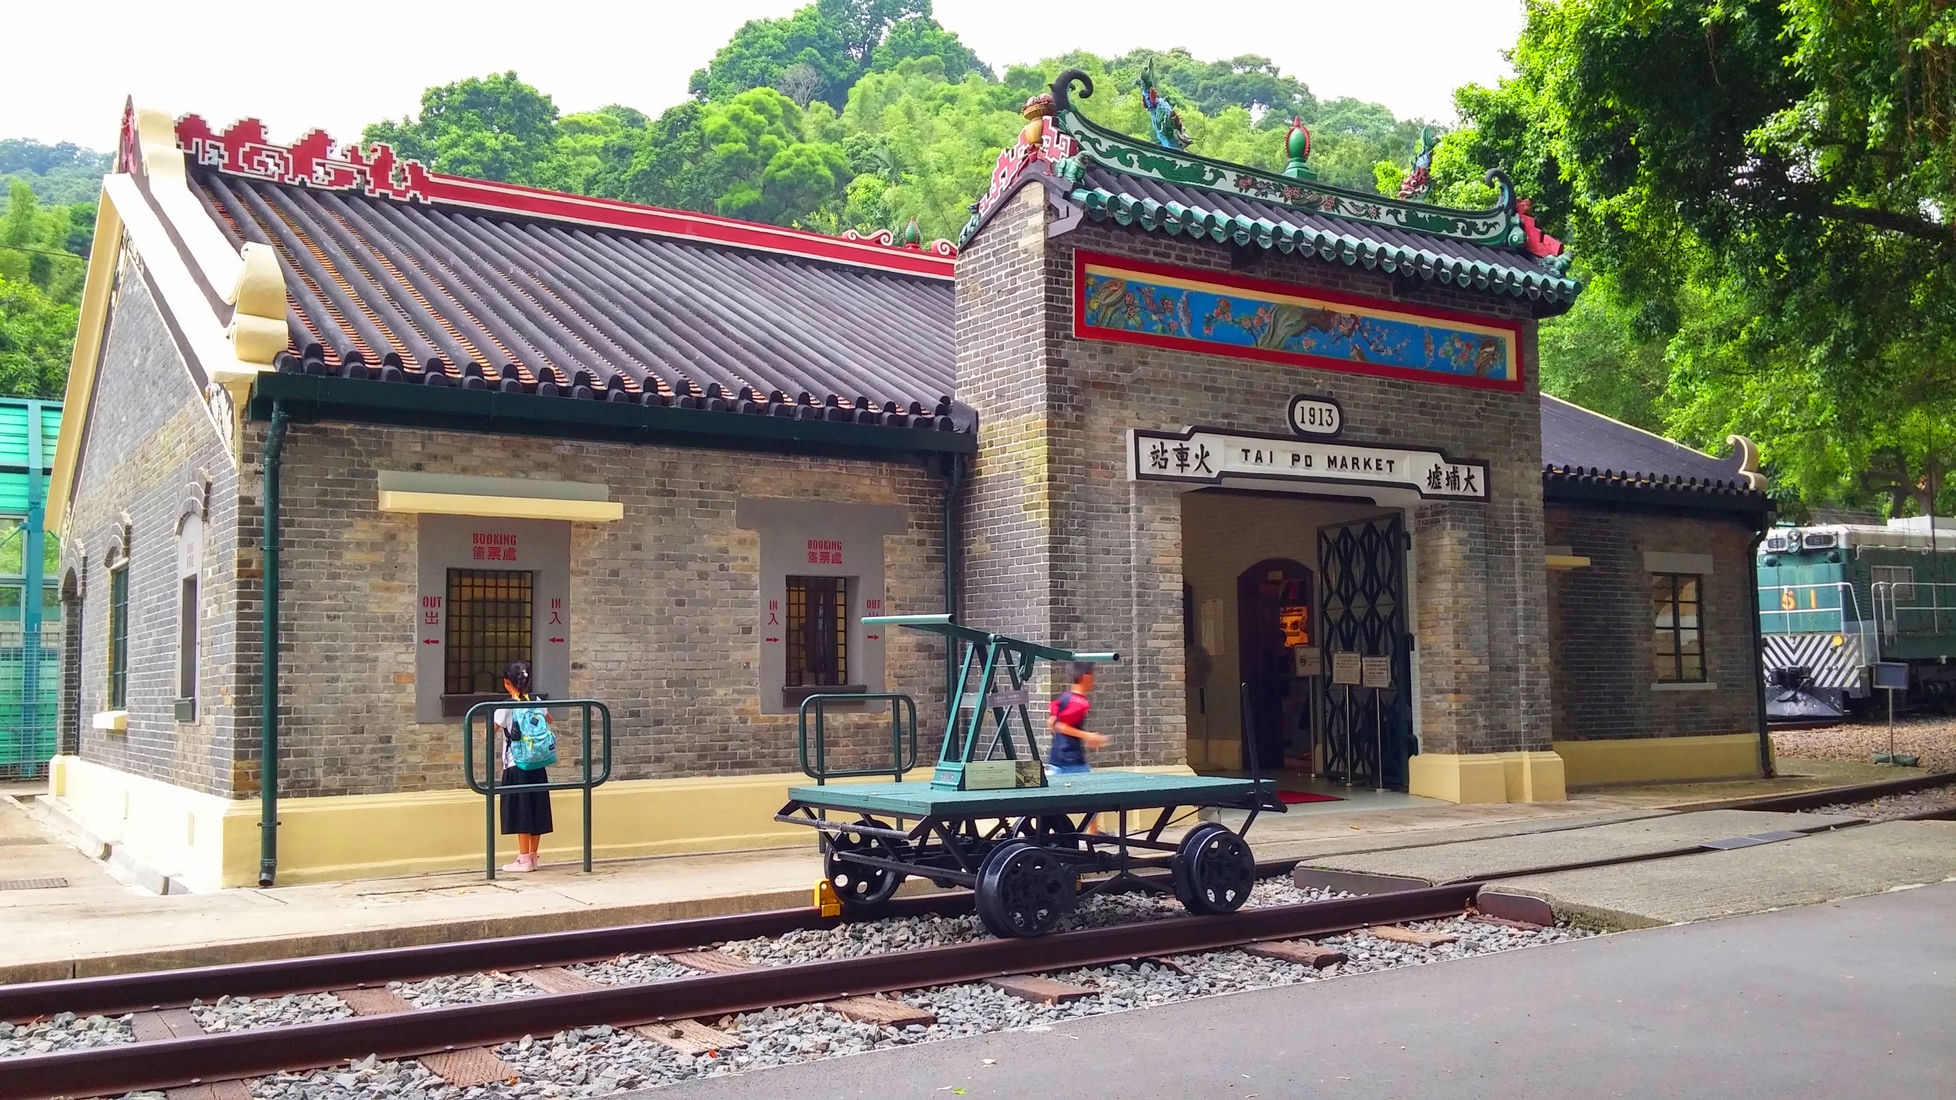 Tai Po Railway Museum